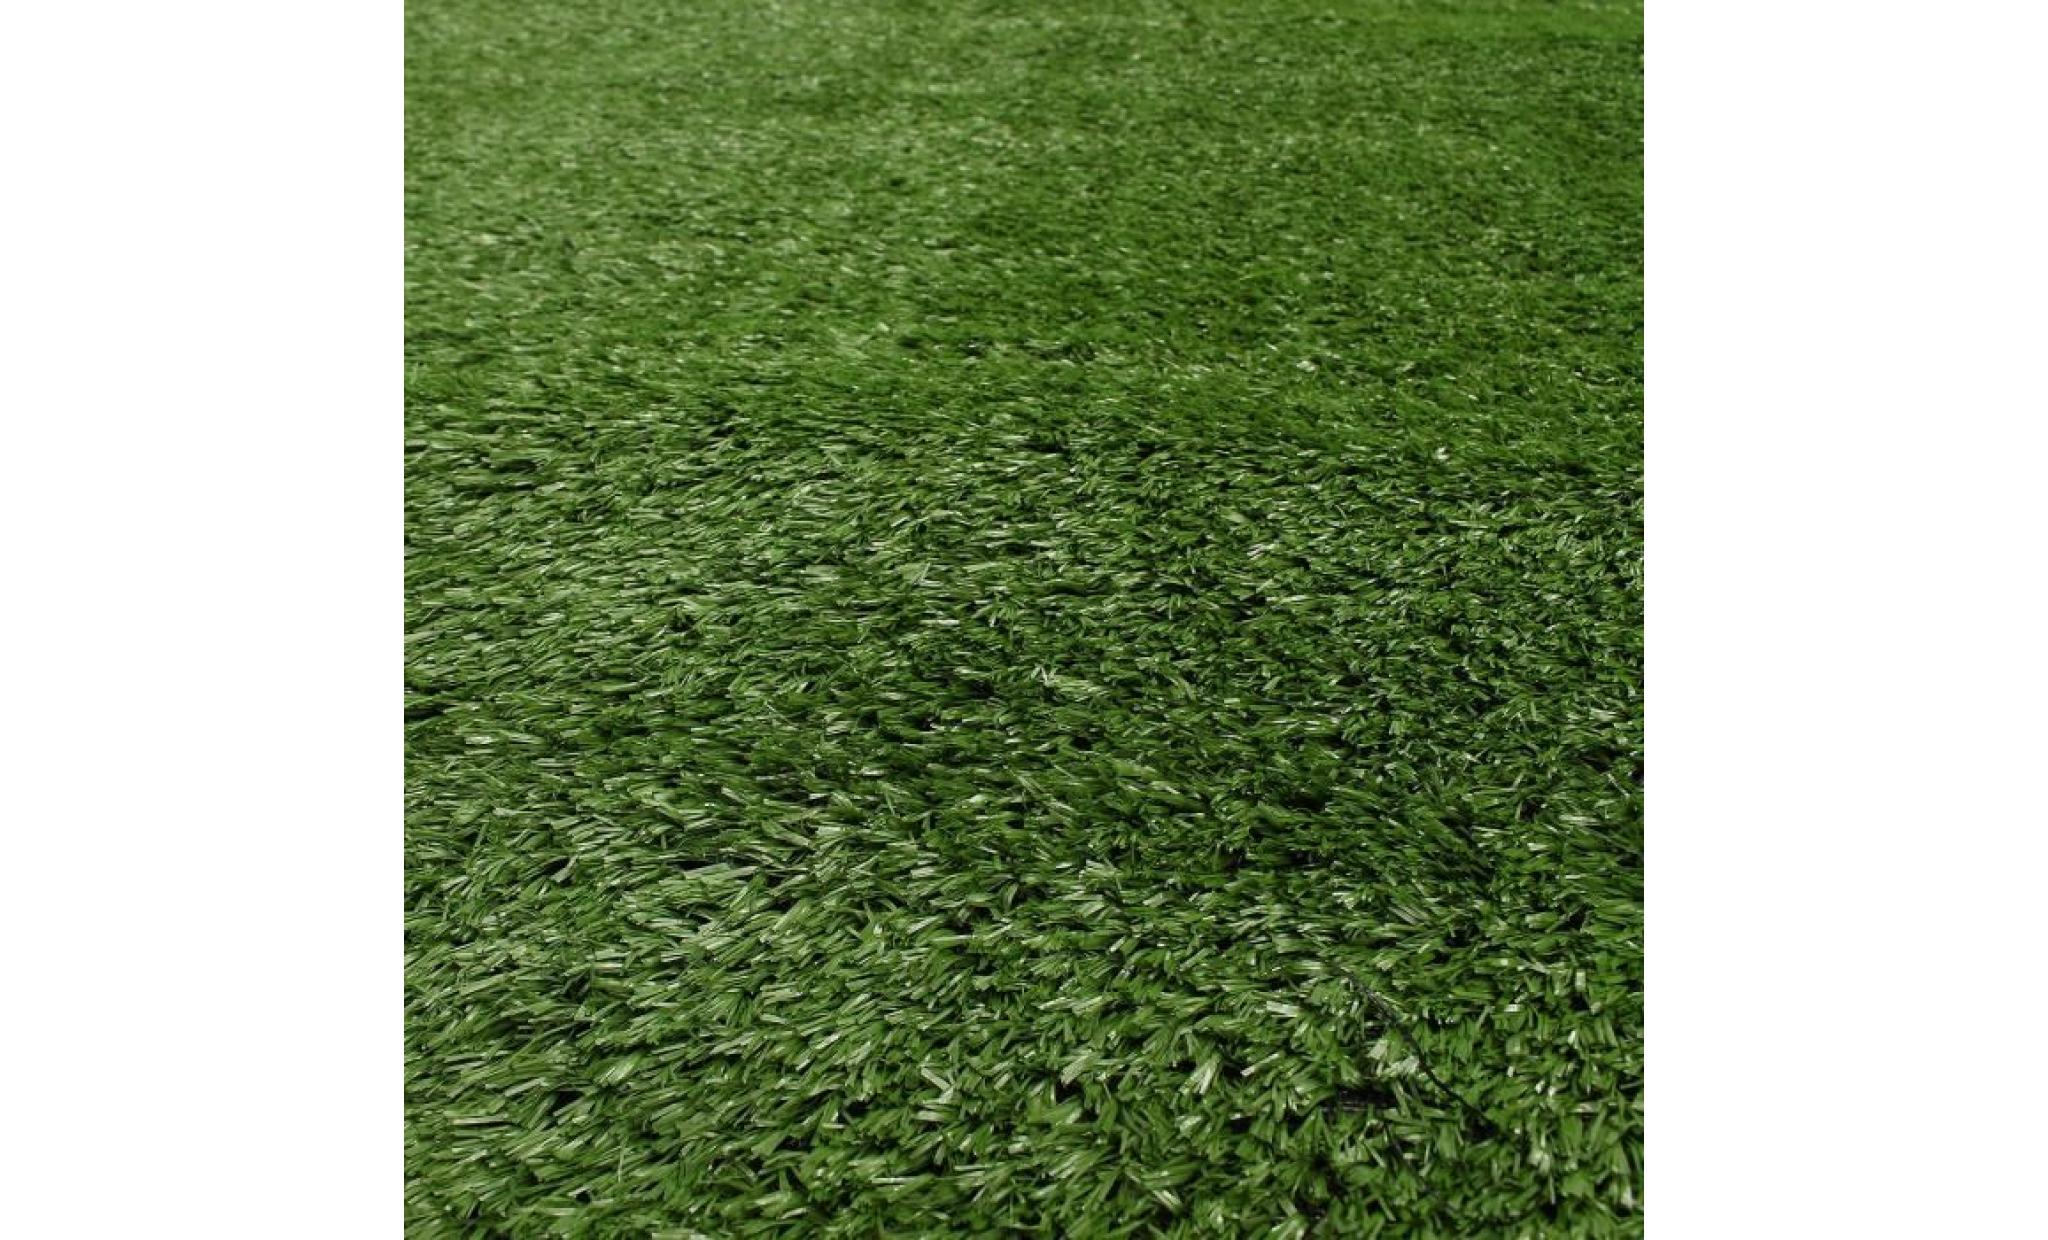 tempsa 1.5cm rouleau tapis de gazon artificielle plastique jardin armée verte 1m*10m pas cher